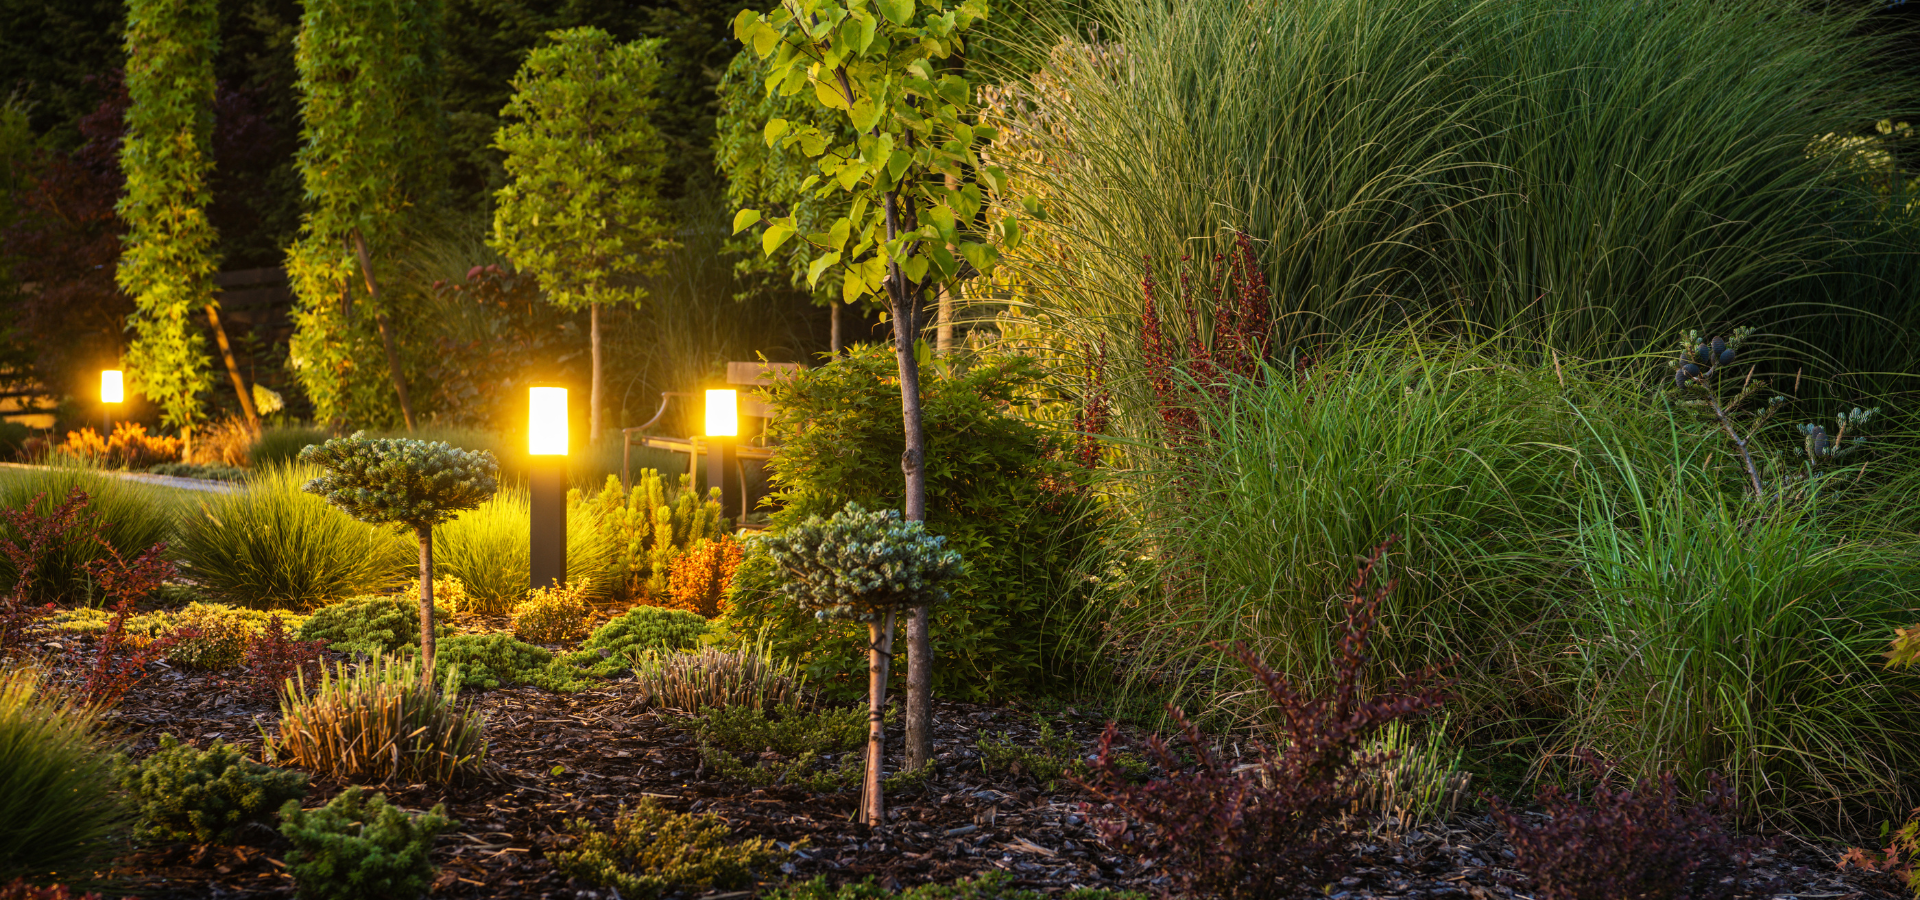 A group of bollard lights in a garden